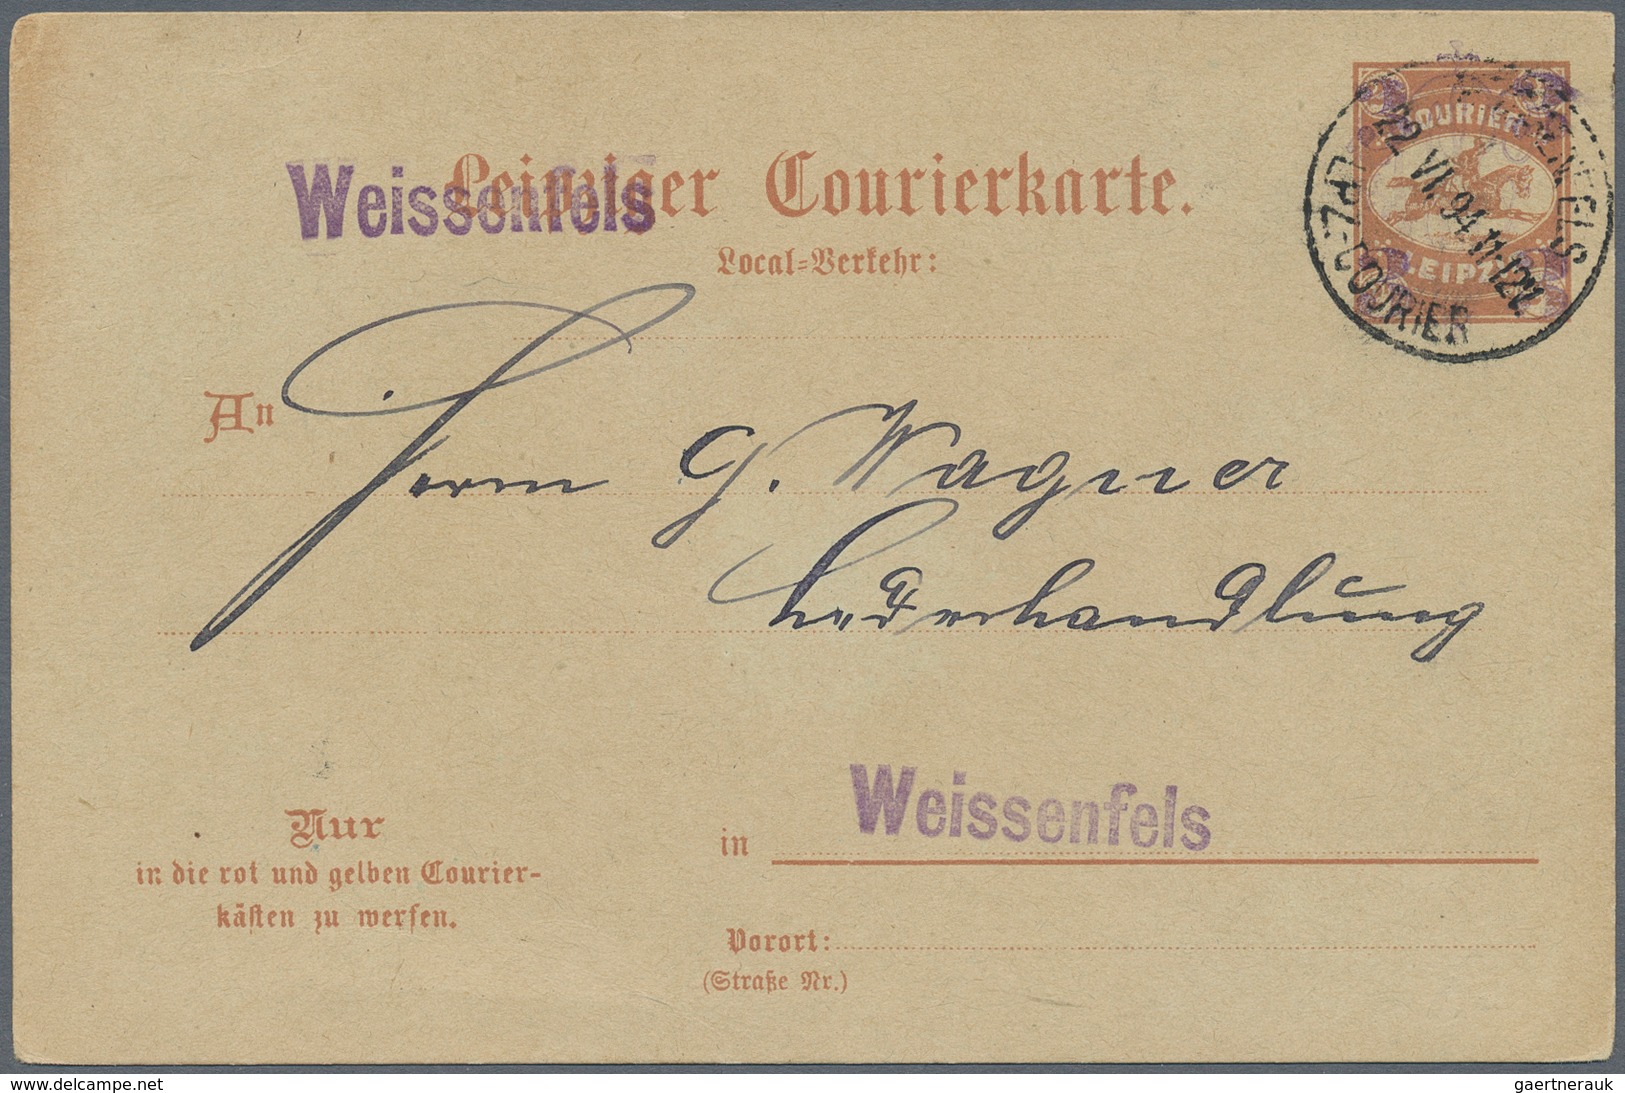 Deutsches Reich - Privatpost (Stadtpost): WEISSENFELS, Courier, Courierkarte 3 A. 2 1/2 Pfg. (P5), S - Posta Privata & Locale